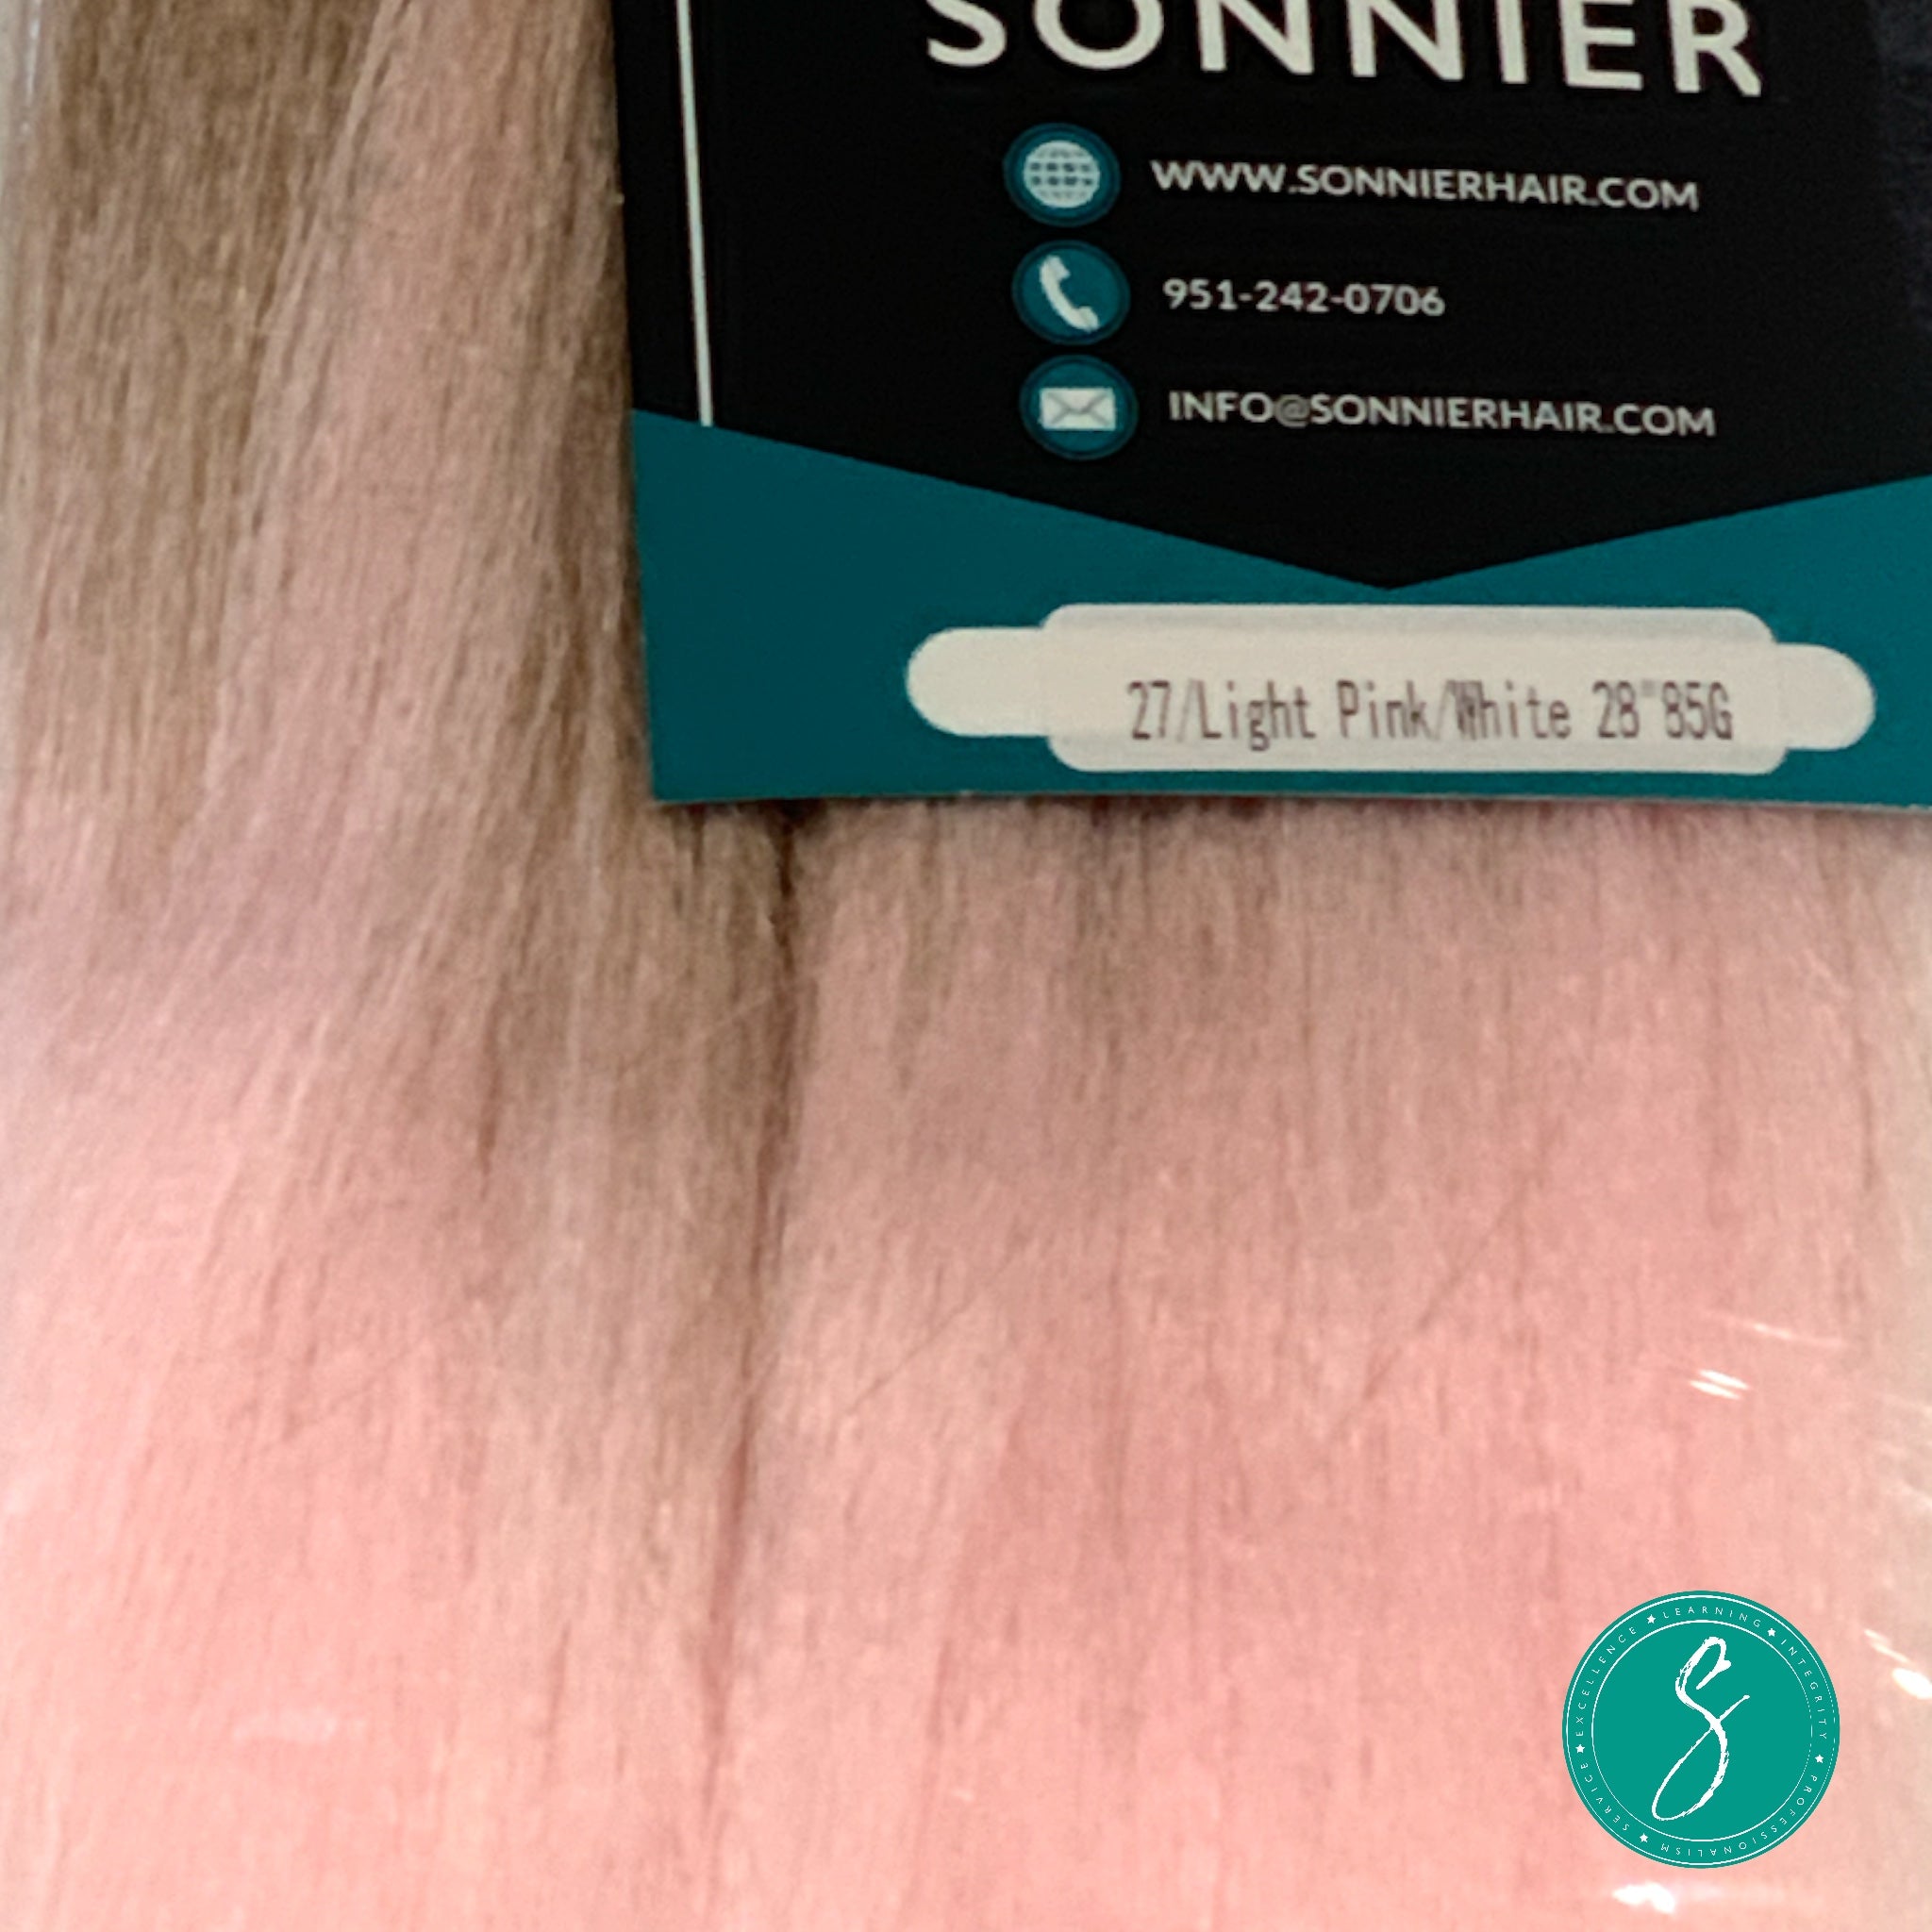 Sonnier Braiding Hair 27/LPink/White